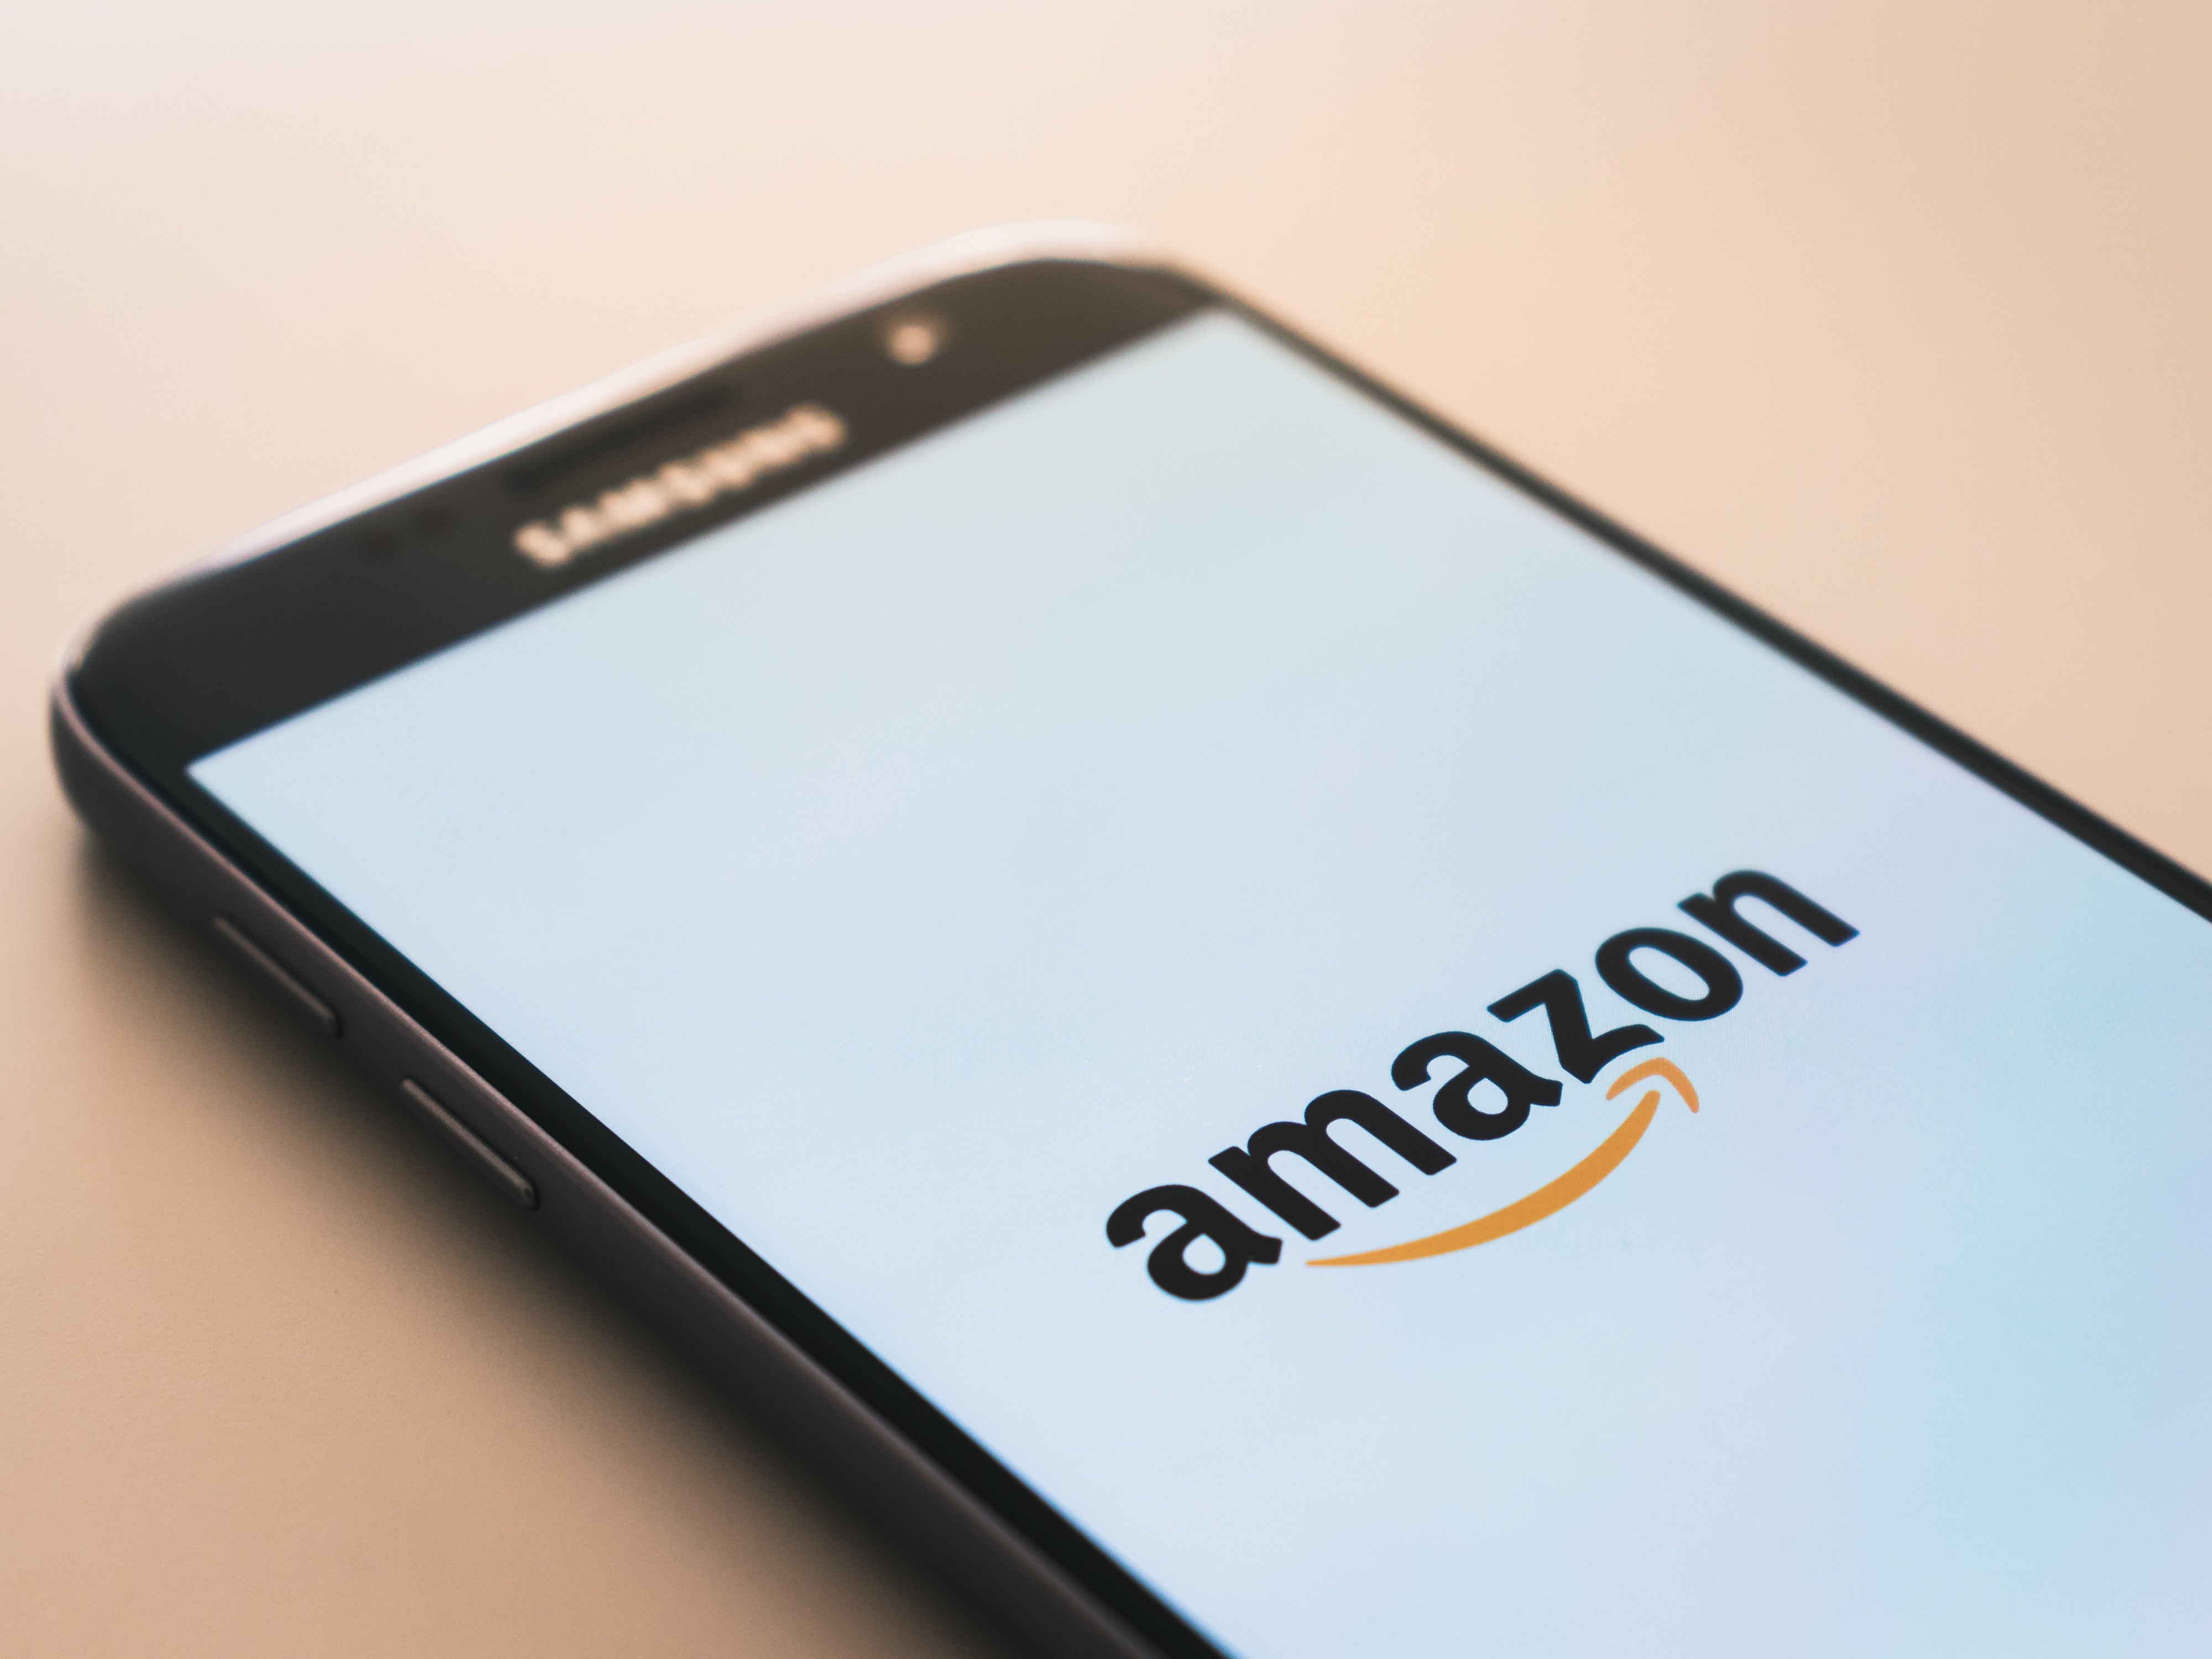 #Amazon mit neuer Verpackung: Das gab es noch nie